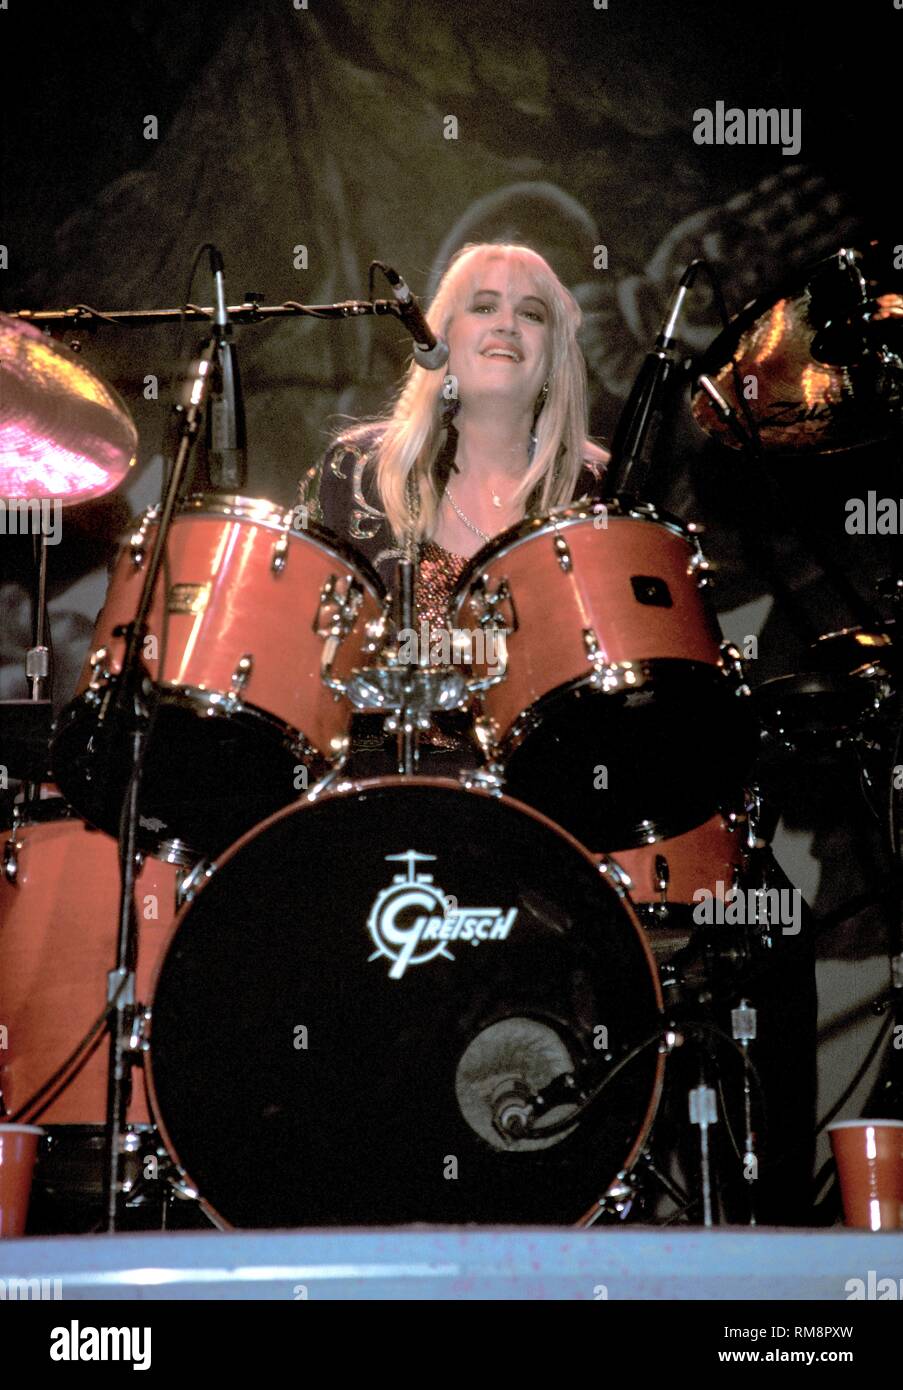 Schiave batterista Debbi Peterson è indicato di eseguire sul palco. Foto Stock